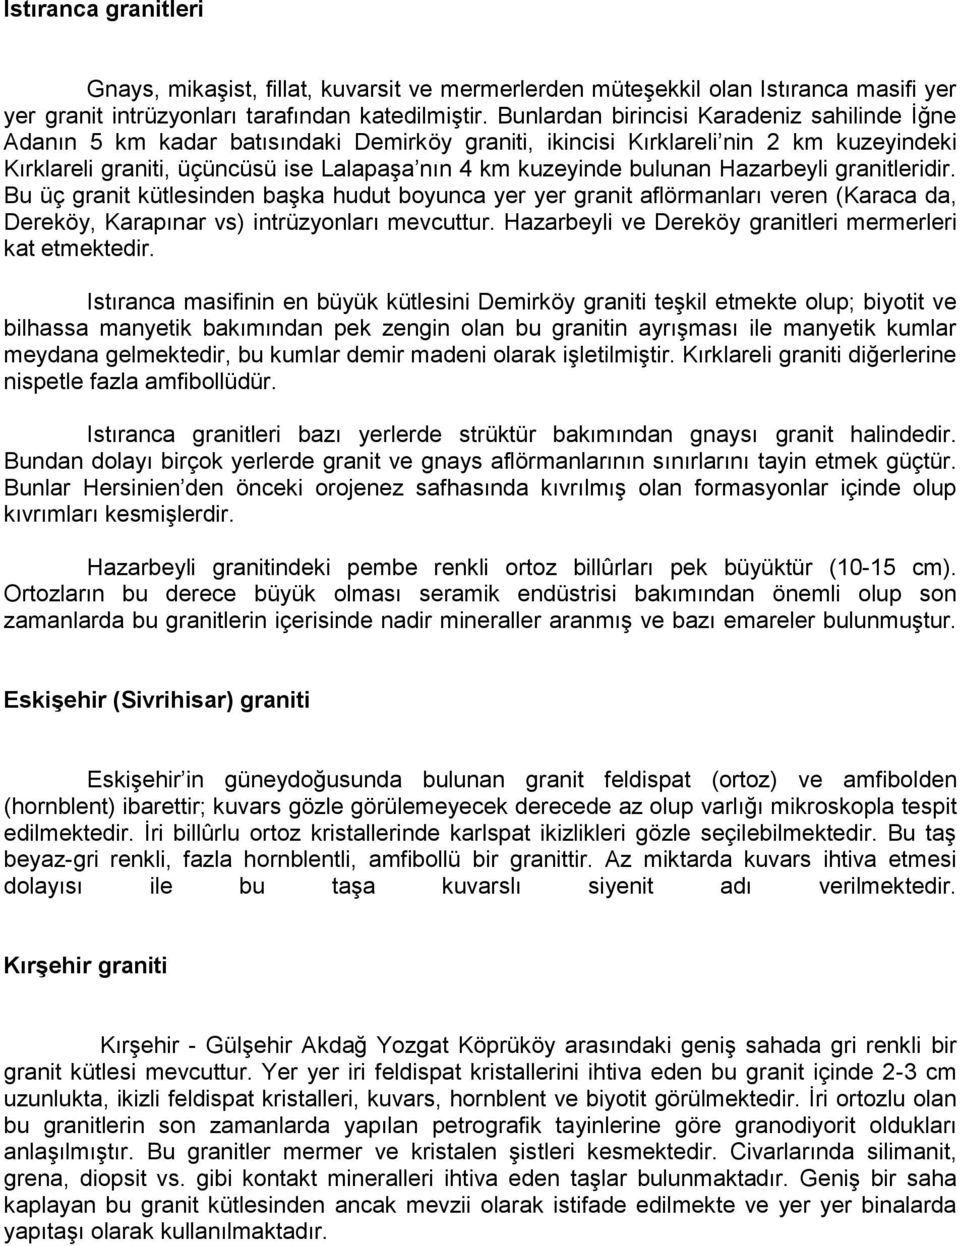 Granit. Türkiye de Bulunan Granit Yatakları - PDF Ücretsiz indirin